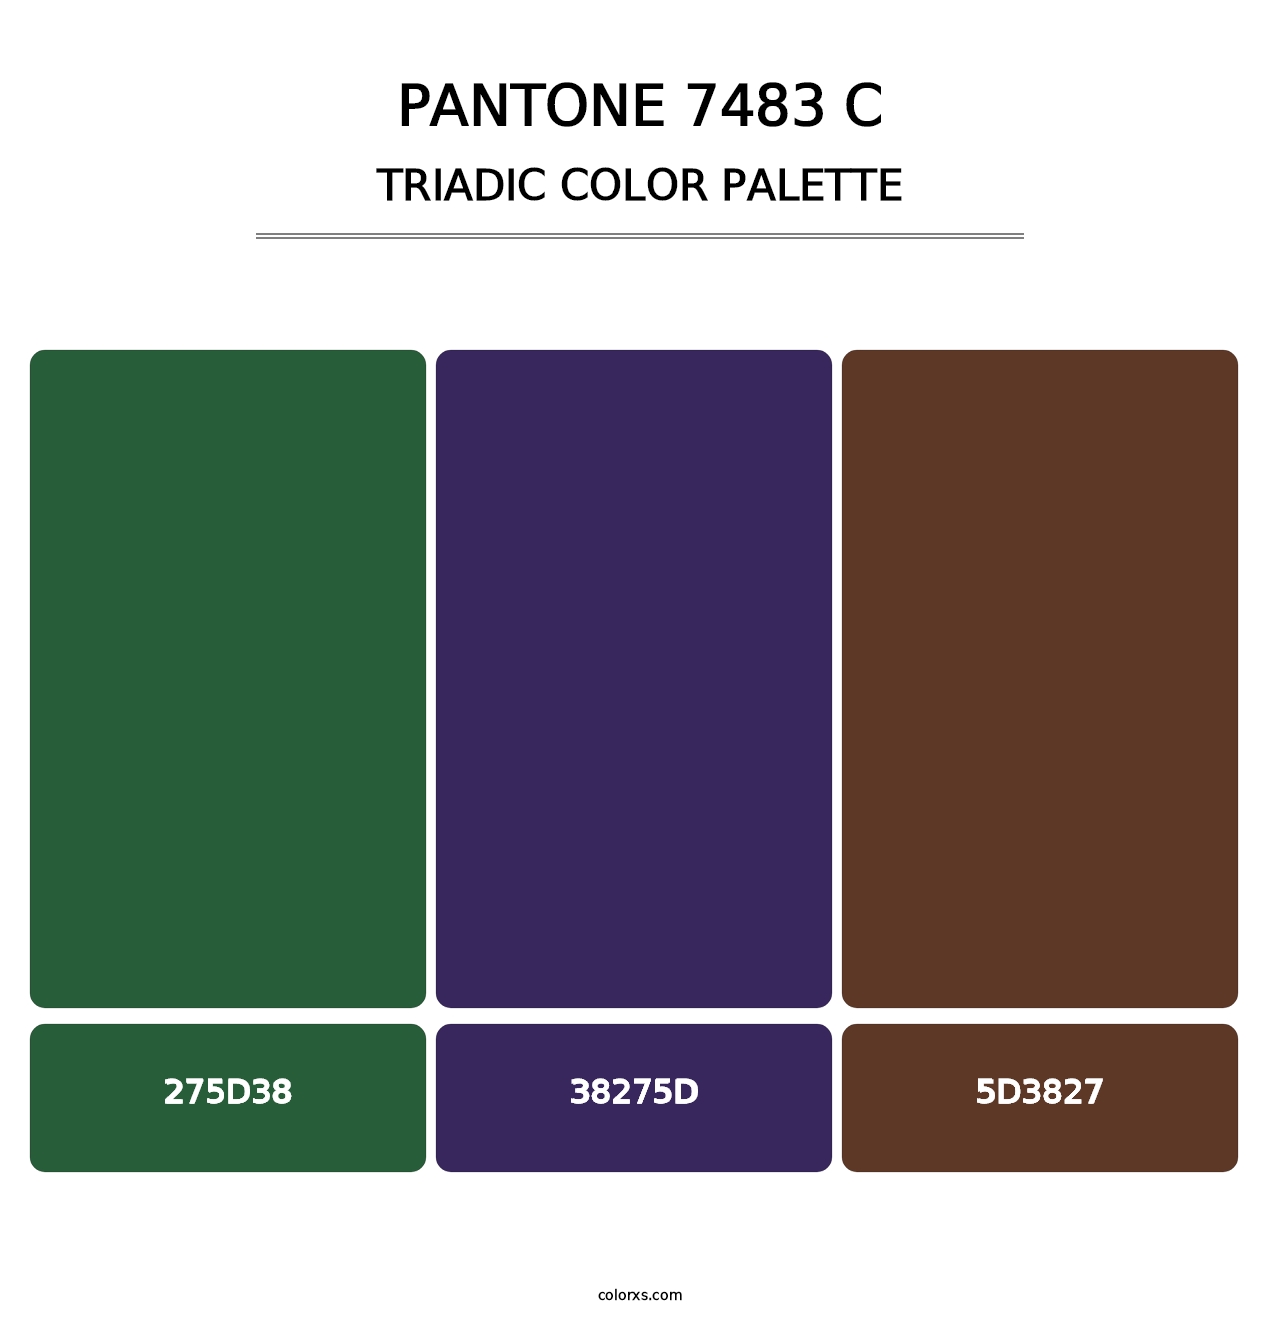 PANTONE 7483 C - Triadic Color Palette